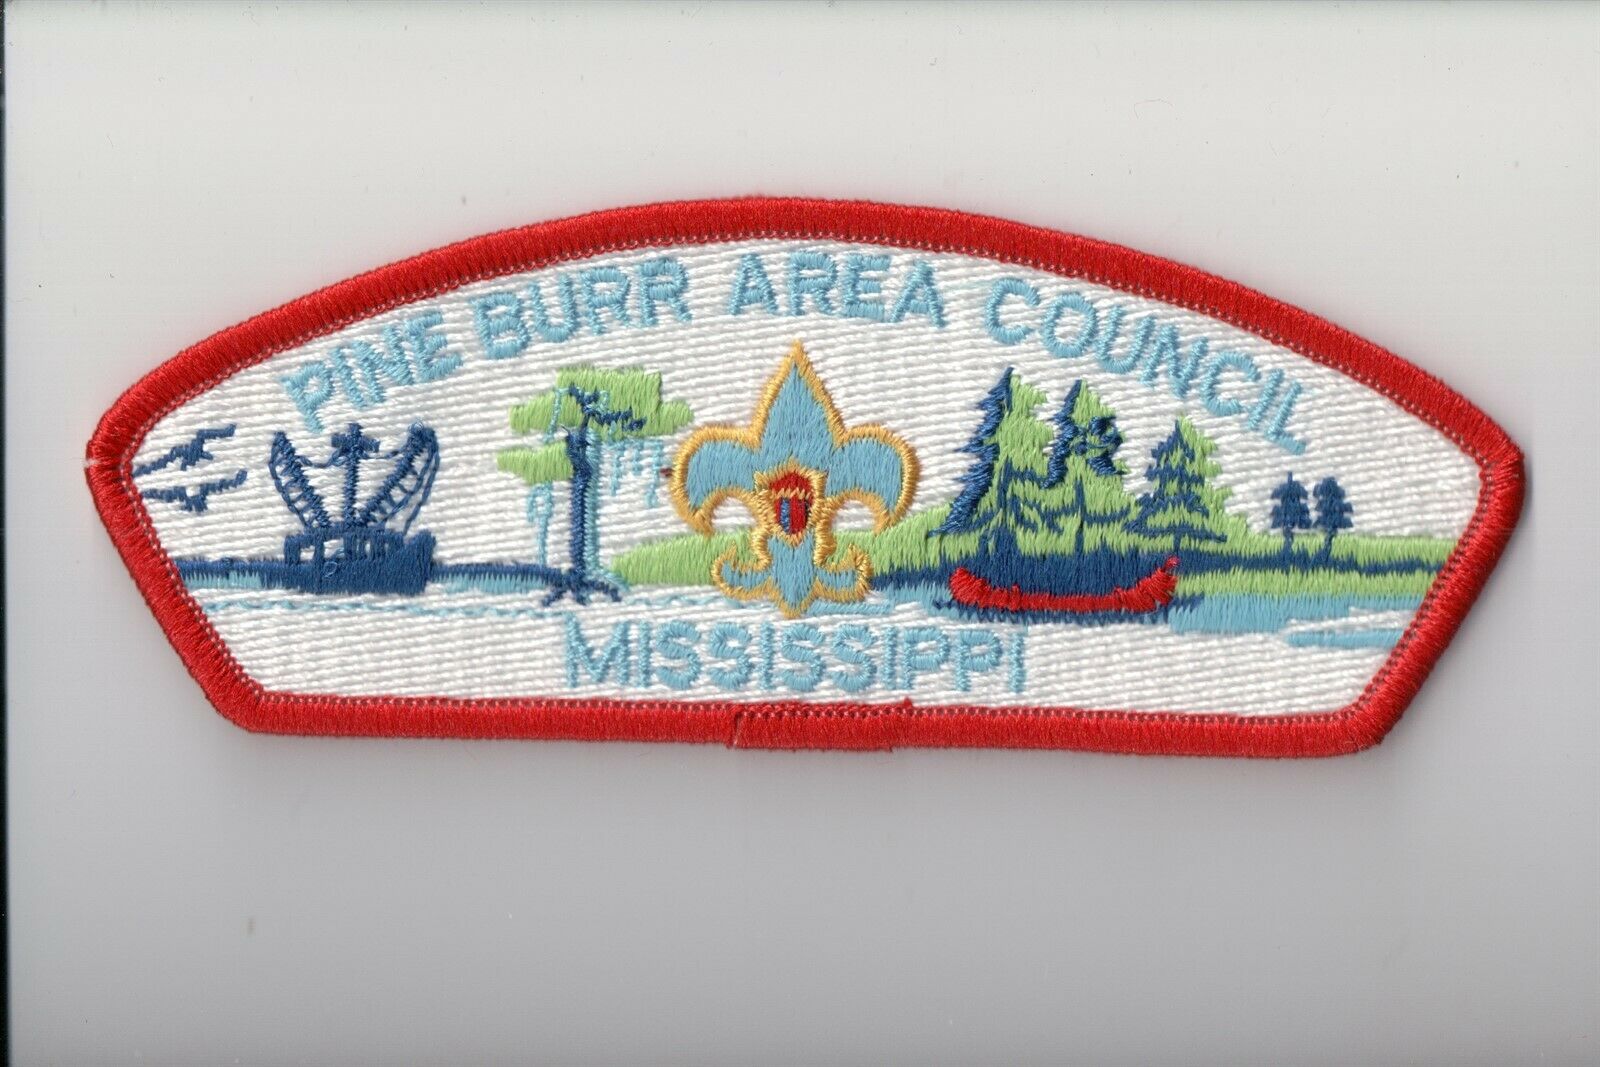 Pine Burr Council Csp (j)